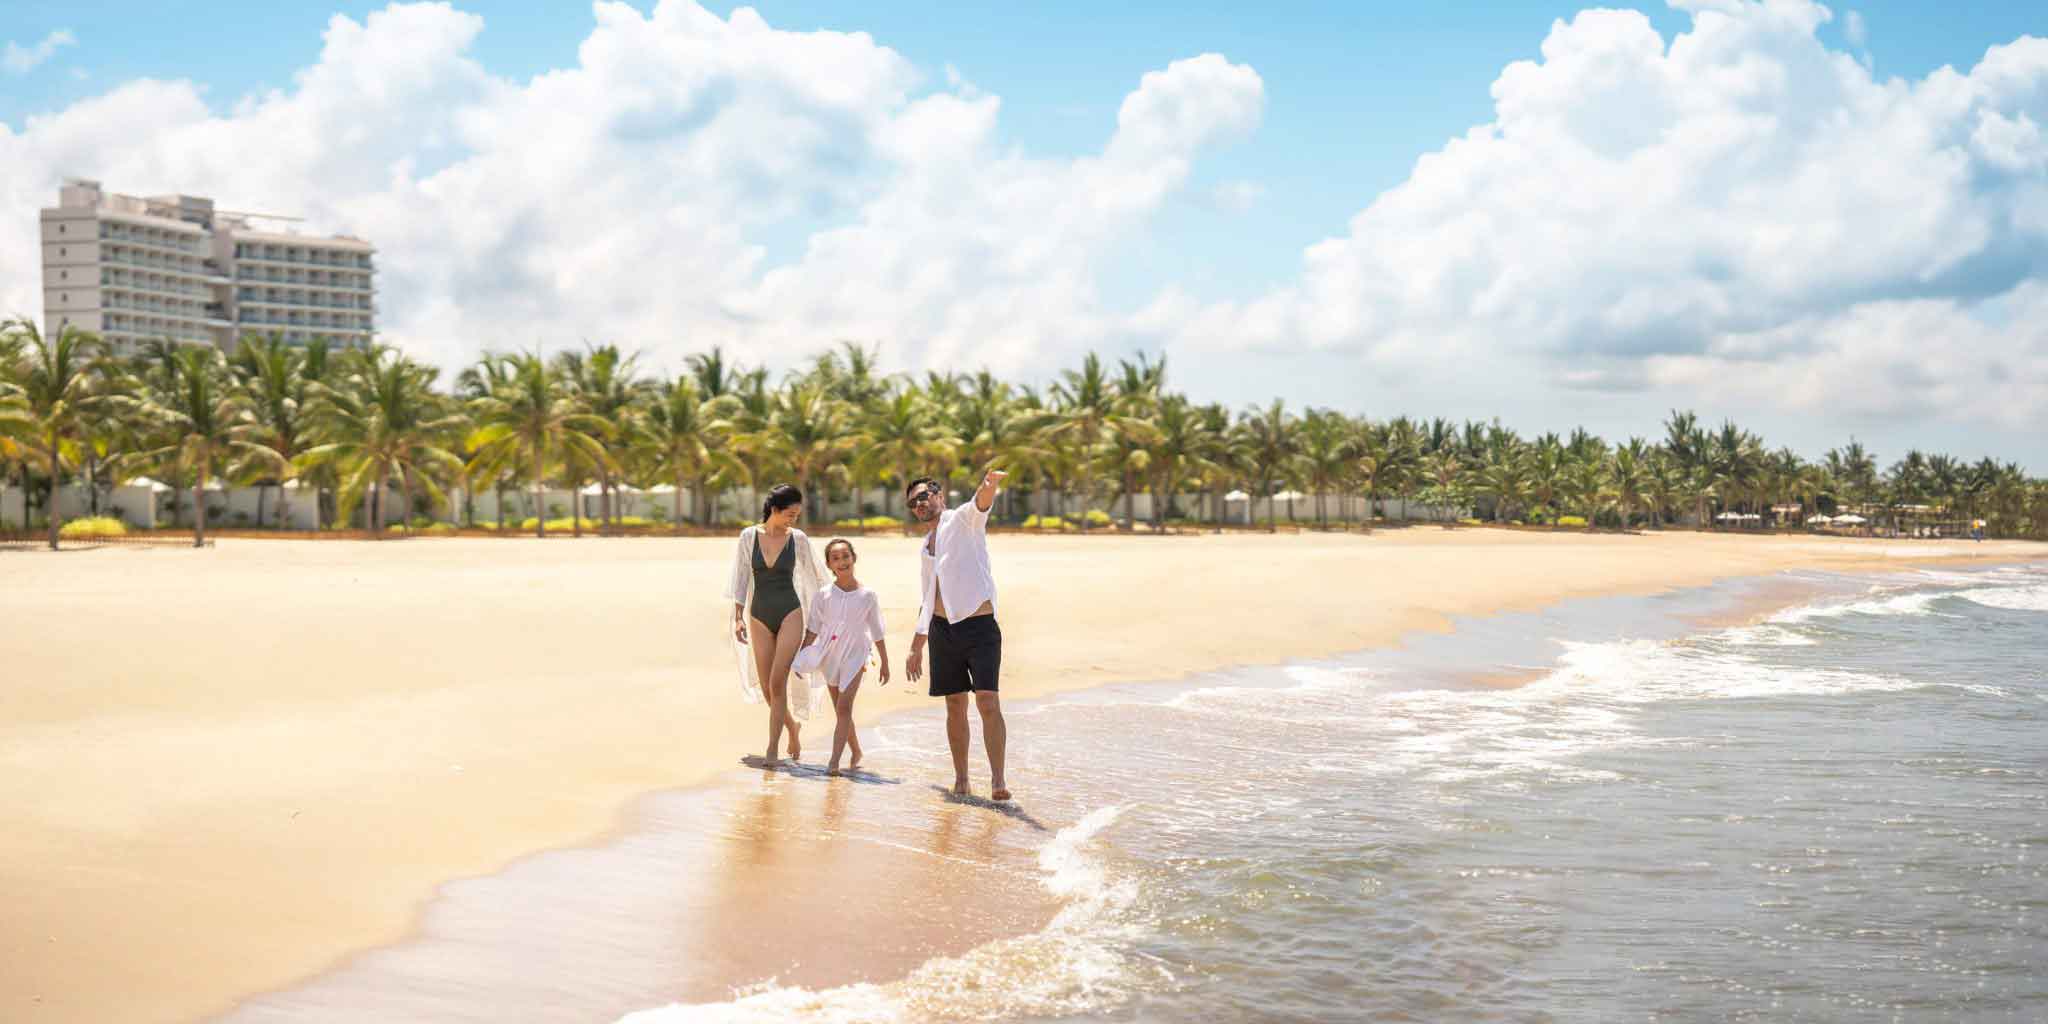 Melia Ho Tram Beach Resort với bờ biển dài hơn 1.1km